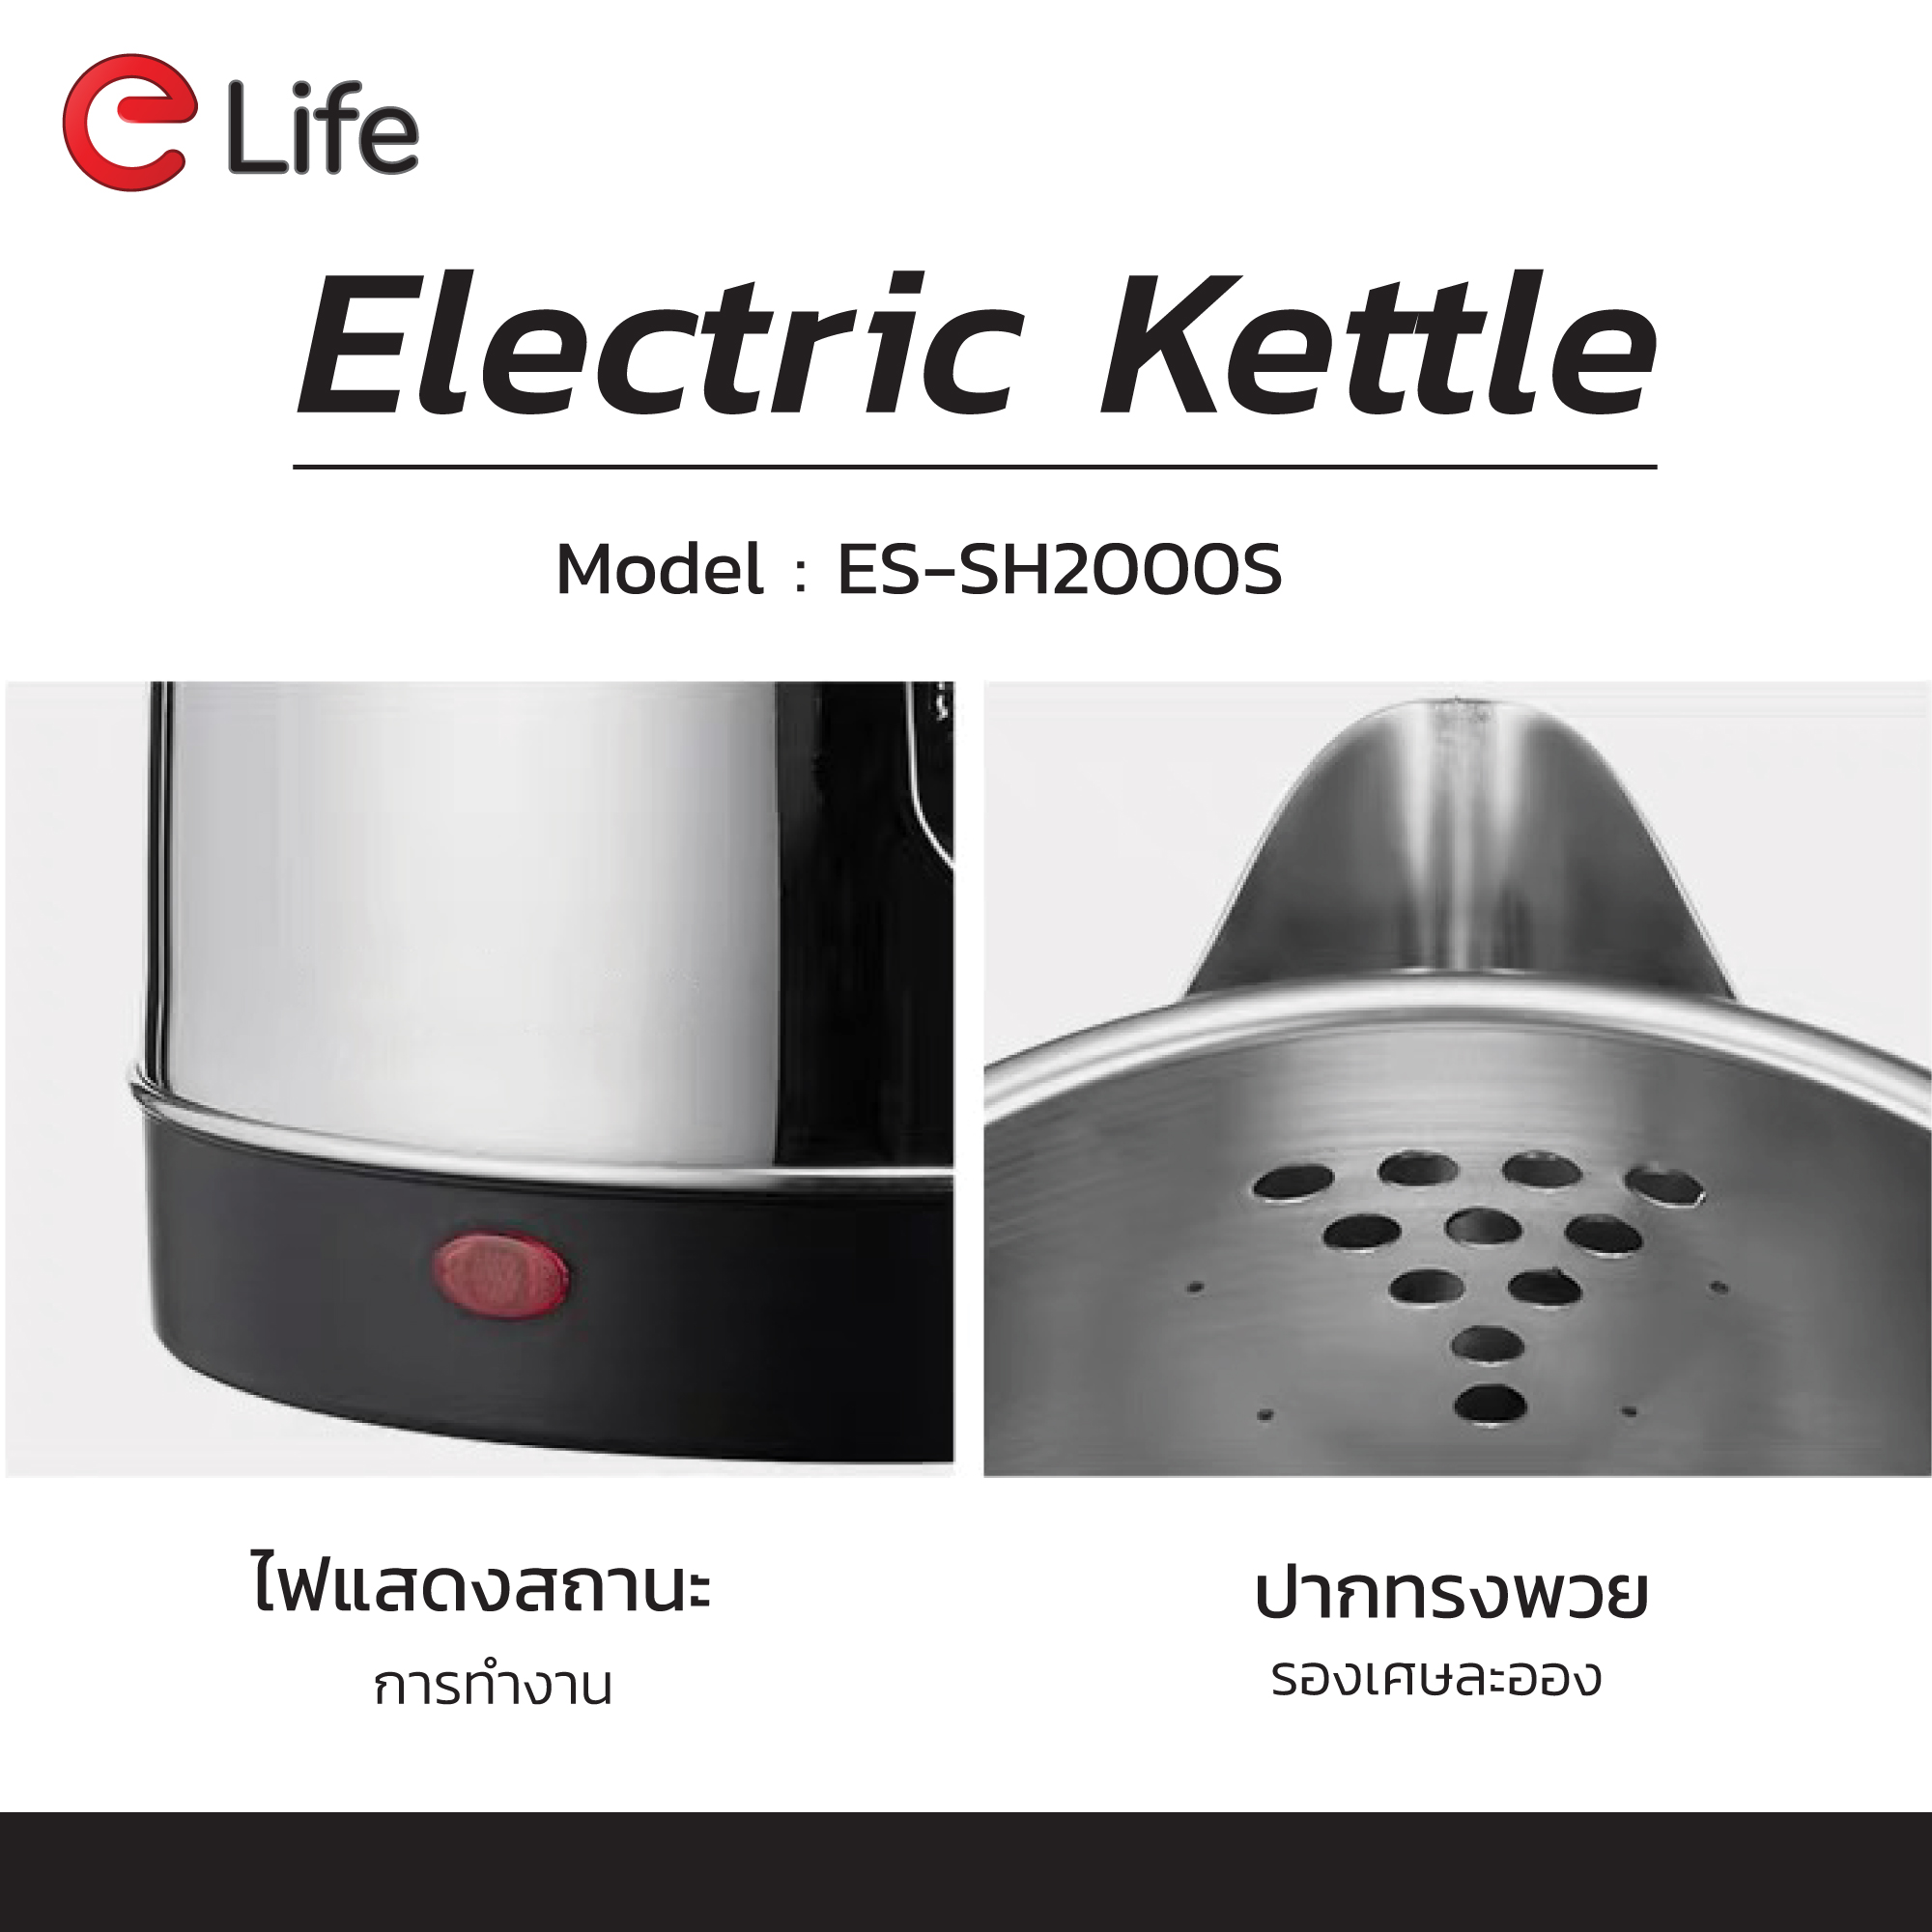 ข้อมูลเพิ่มเติมของ กาต้มนำไฟฟ้า 1500W ขนาด 2.0L ลิตร เล็ก กาต้มน้ำอัตโนมัติ กาน้ำร้อน ขนาดเล็ก Electric kettle สแตนเลสแท้ สินค้าคุณภาพดี พร้อมจัดส่ง ของใหม่